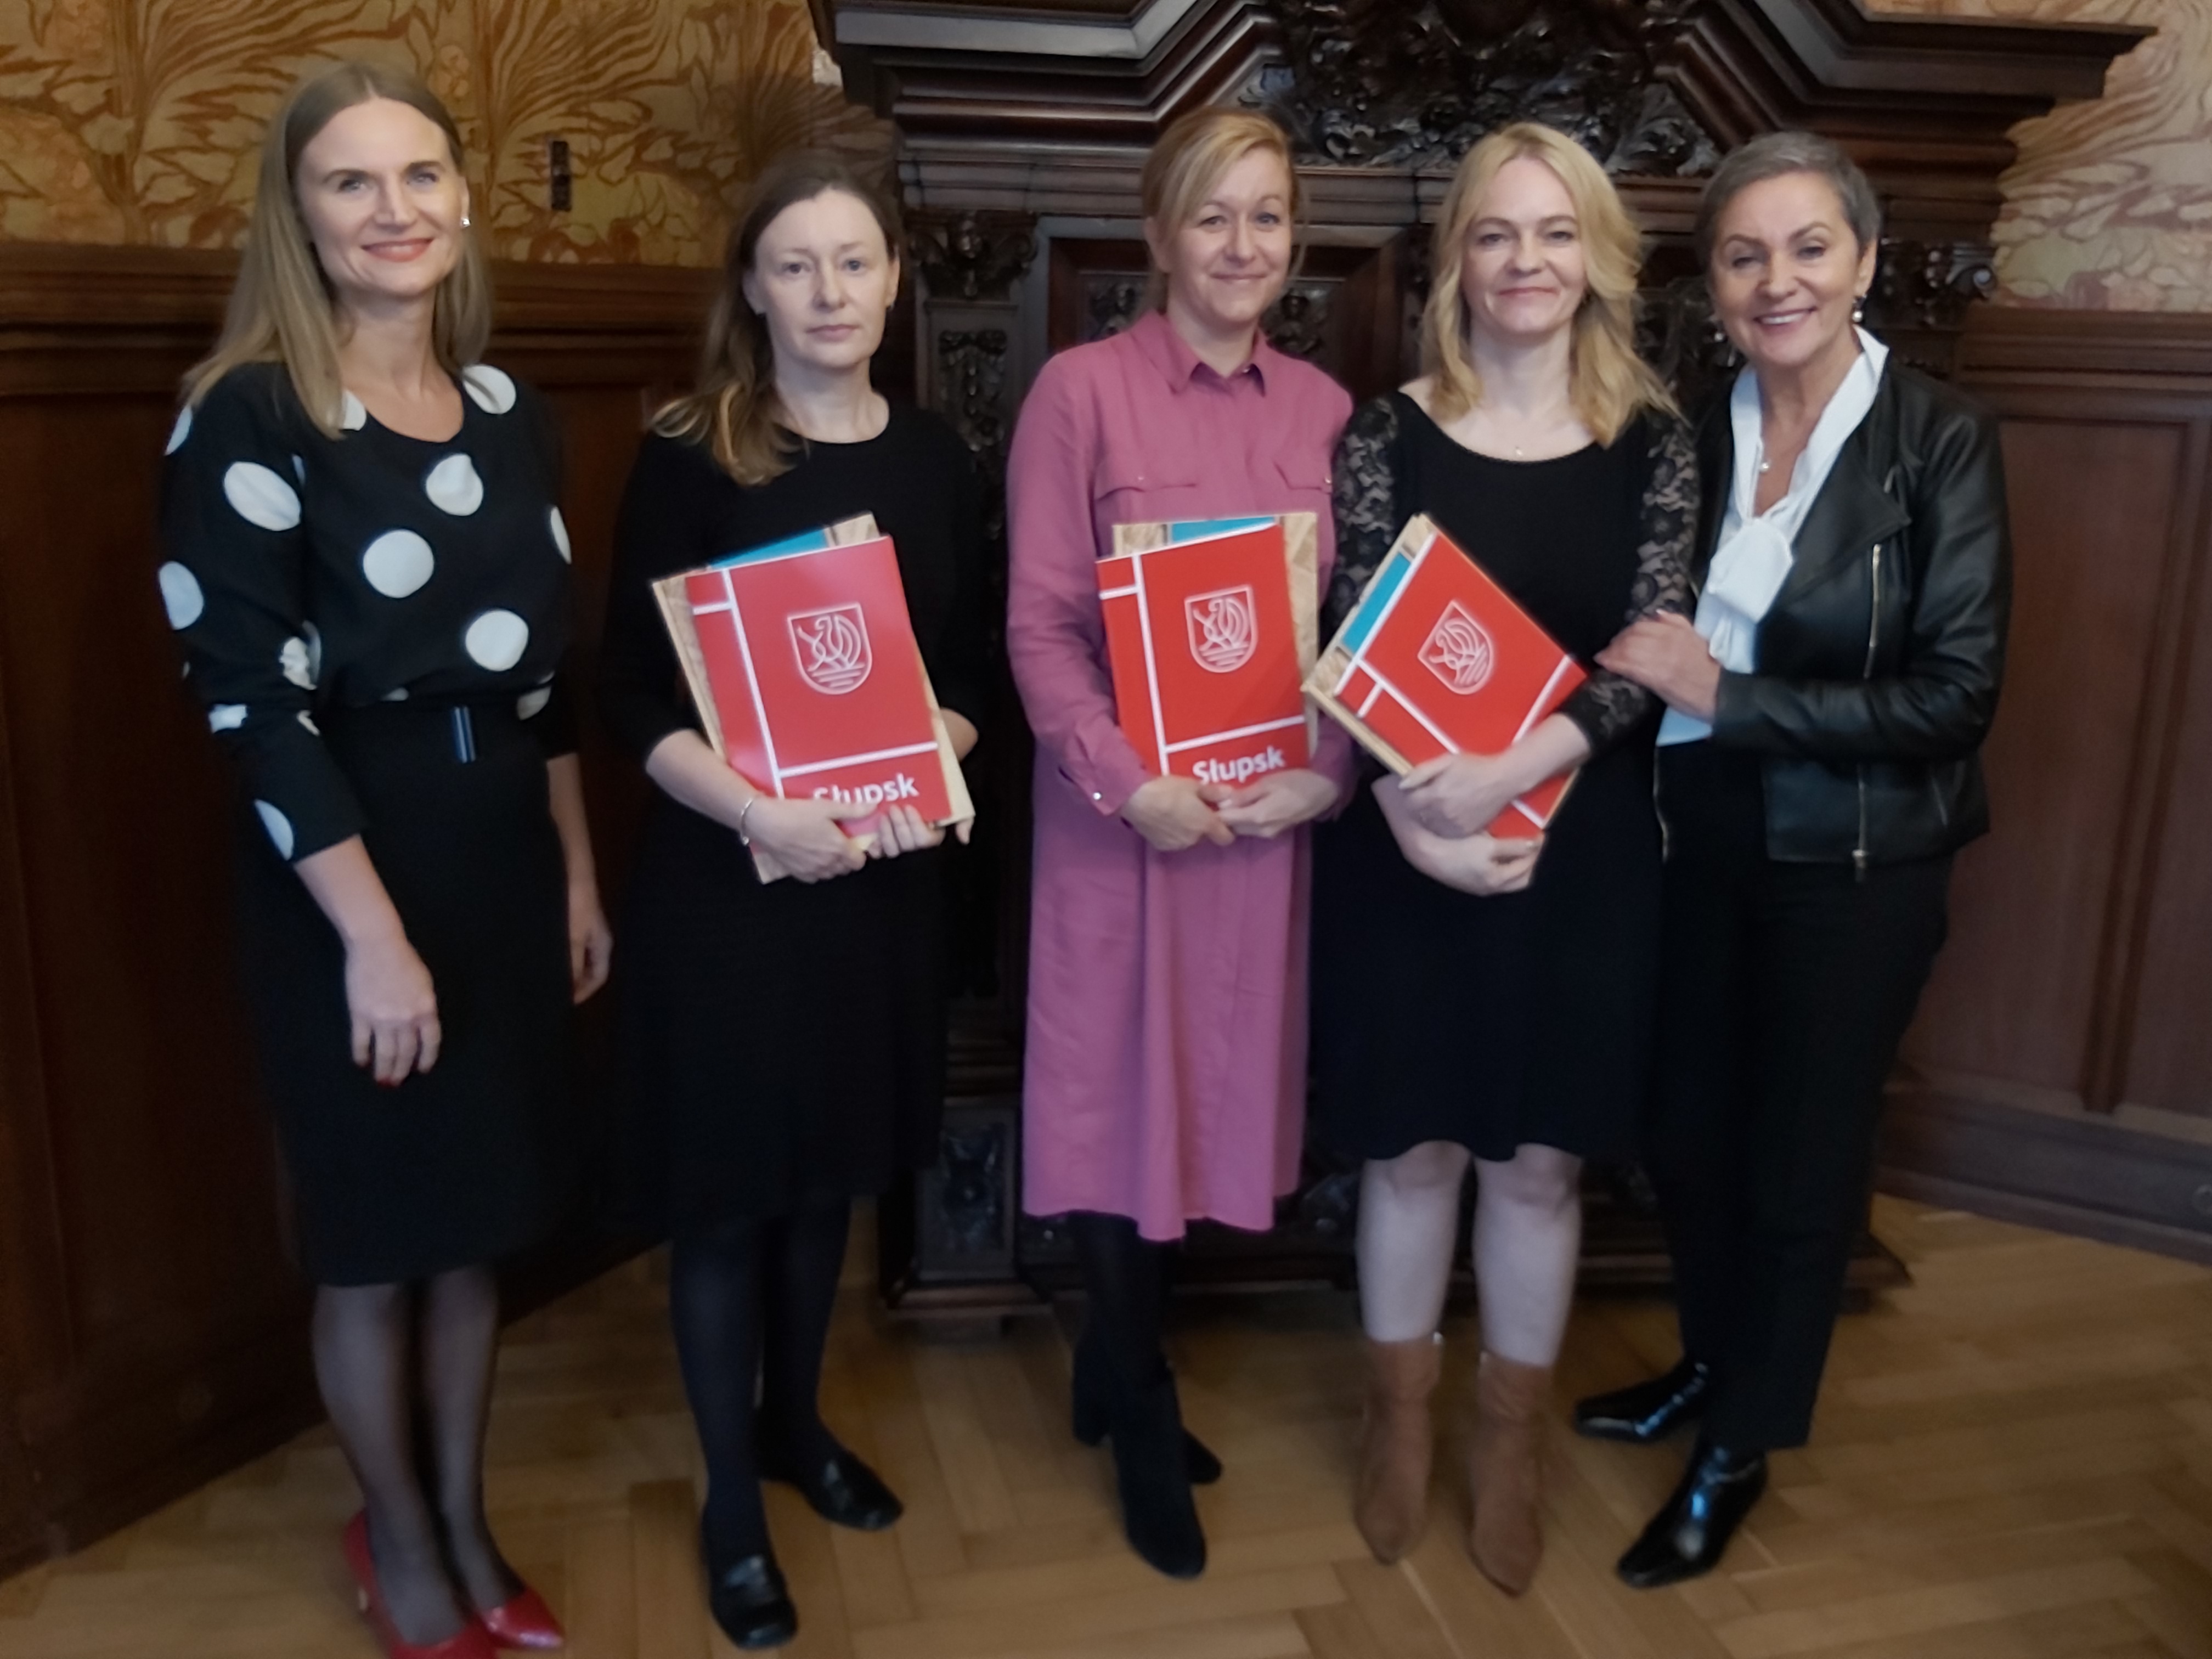 Na zdjęciu widzimy 5 kobiet, Prezydentkę oraz Wiceprezydentkę Słupska, a także trzy finalistki konkursu trzymające teczki prezydenckie z listami gratulacyjnymi